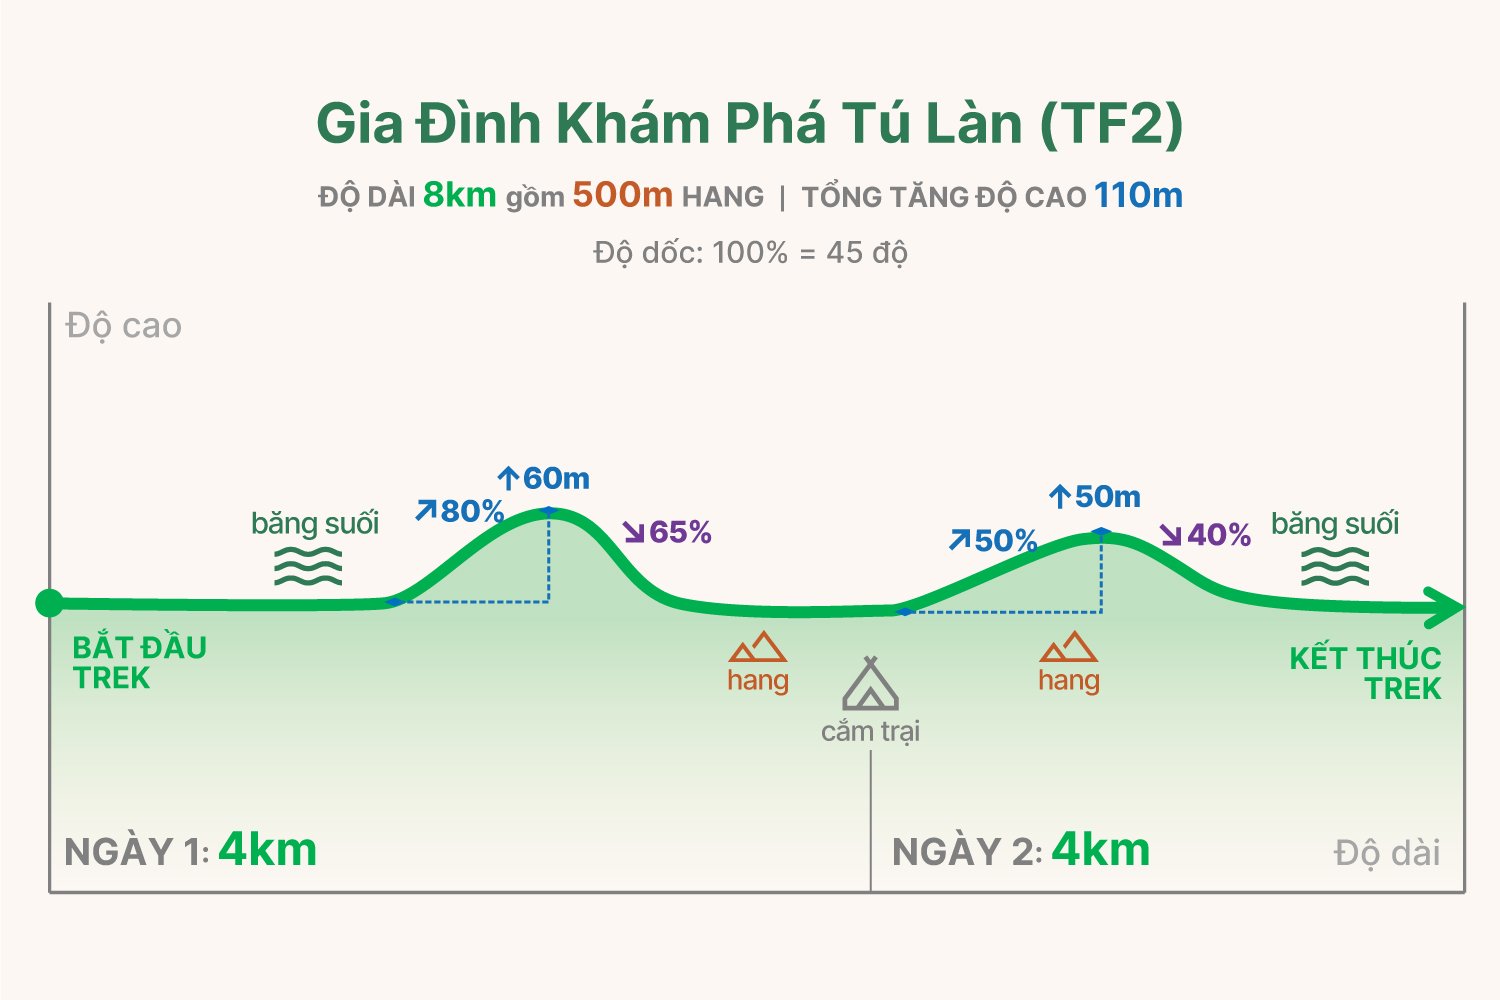 TF2 trekking graph